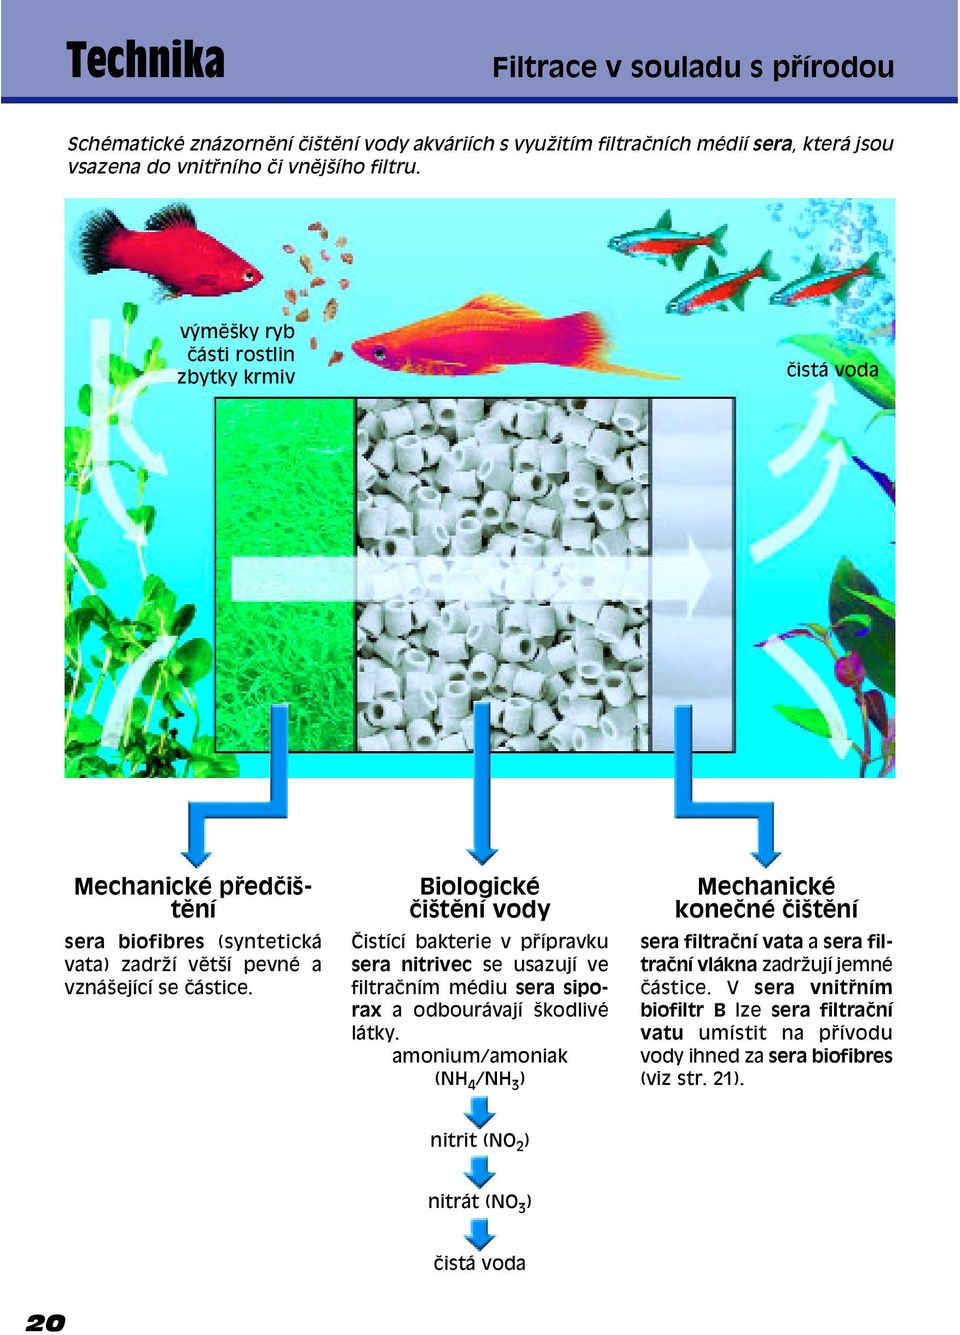 BiologickÈ ËiötÏní vody»istící bakterie v p ípravku sera nitrivec se usazují ve filtraëním mèdiu sera siporax a odbourávají ökodlivè látky.